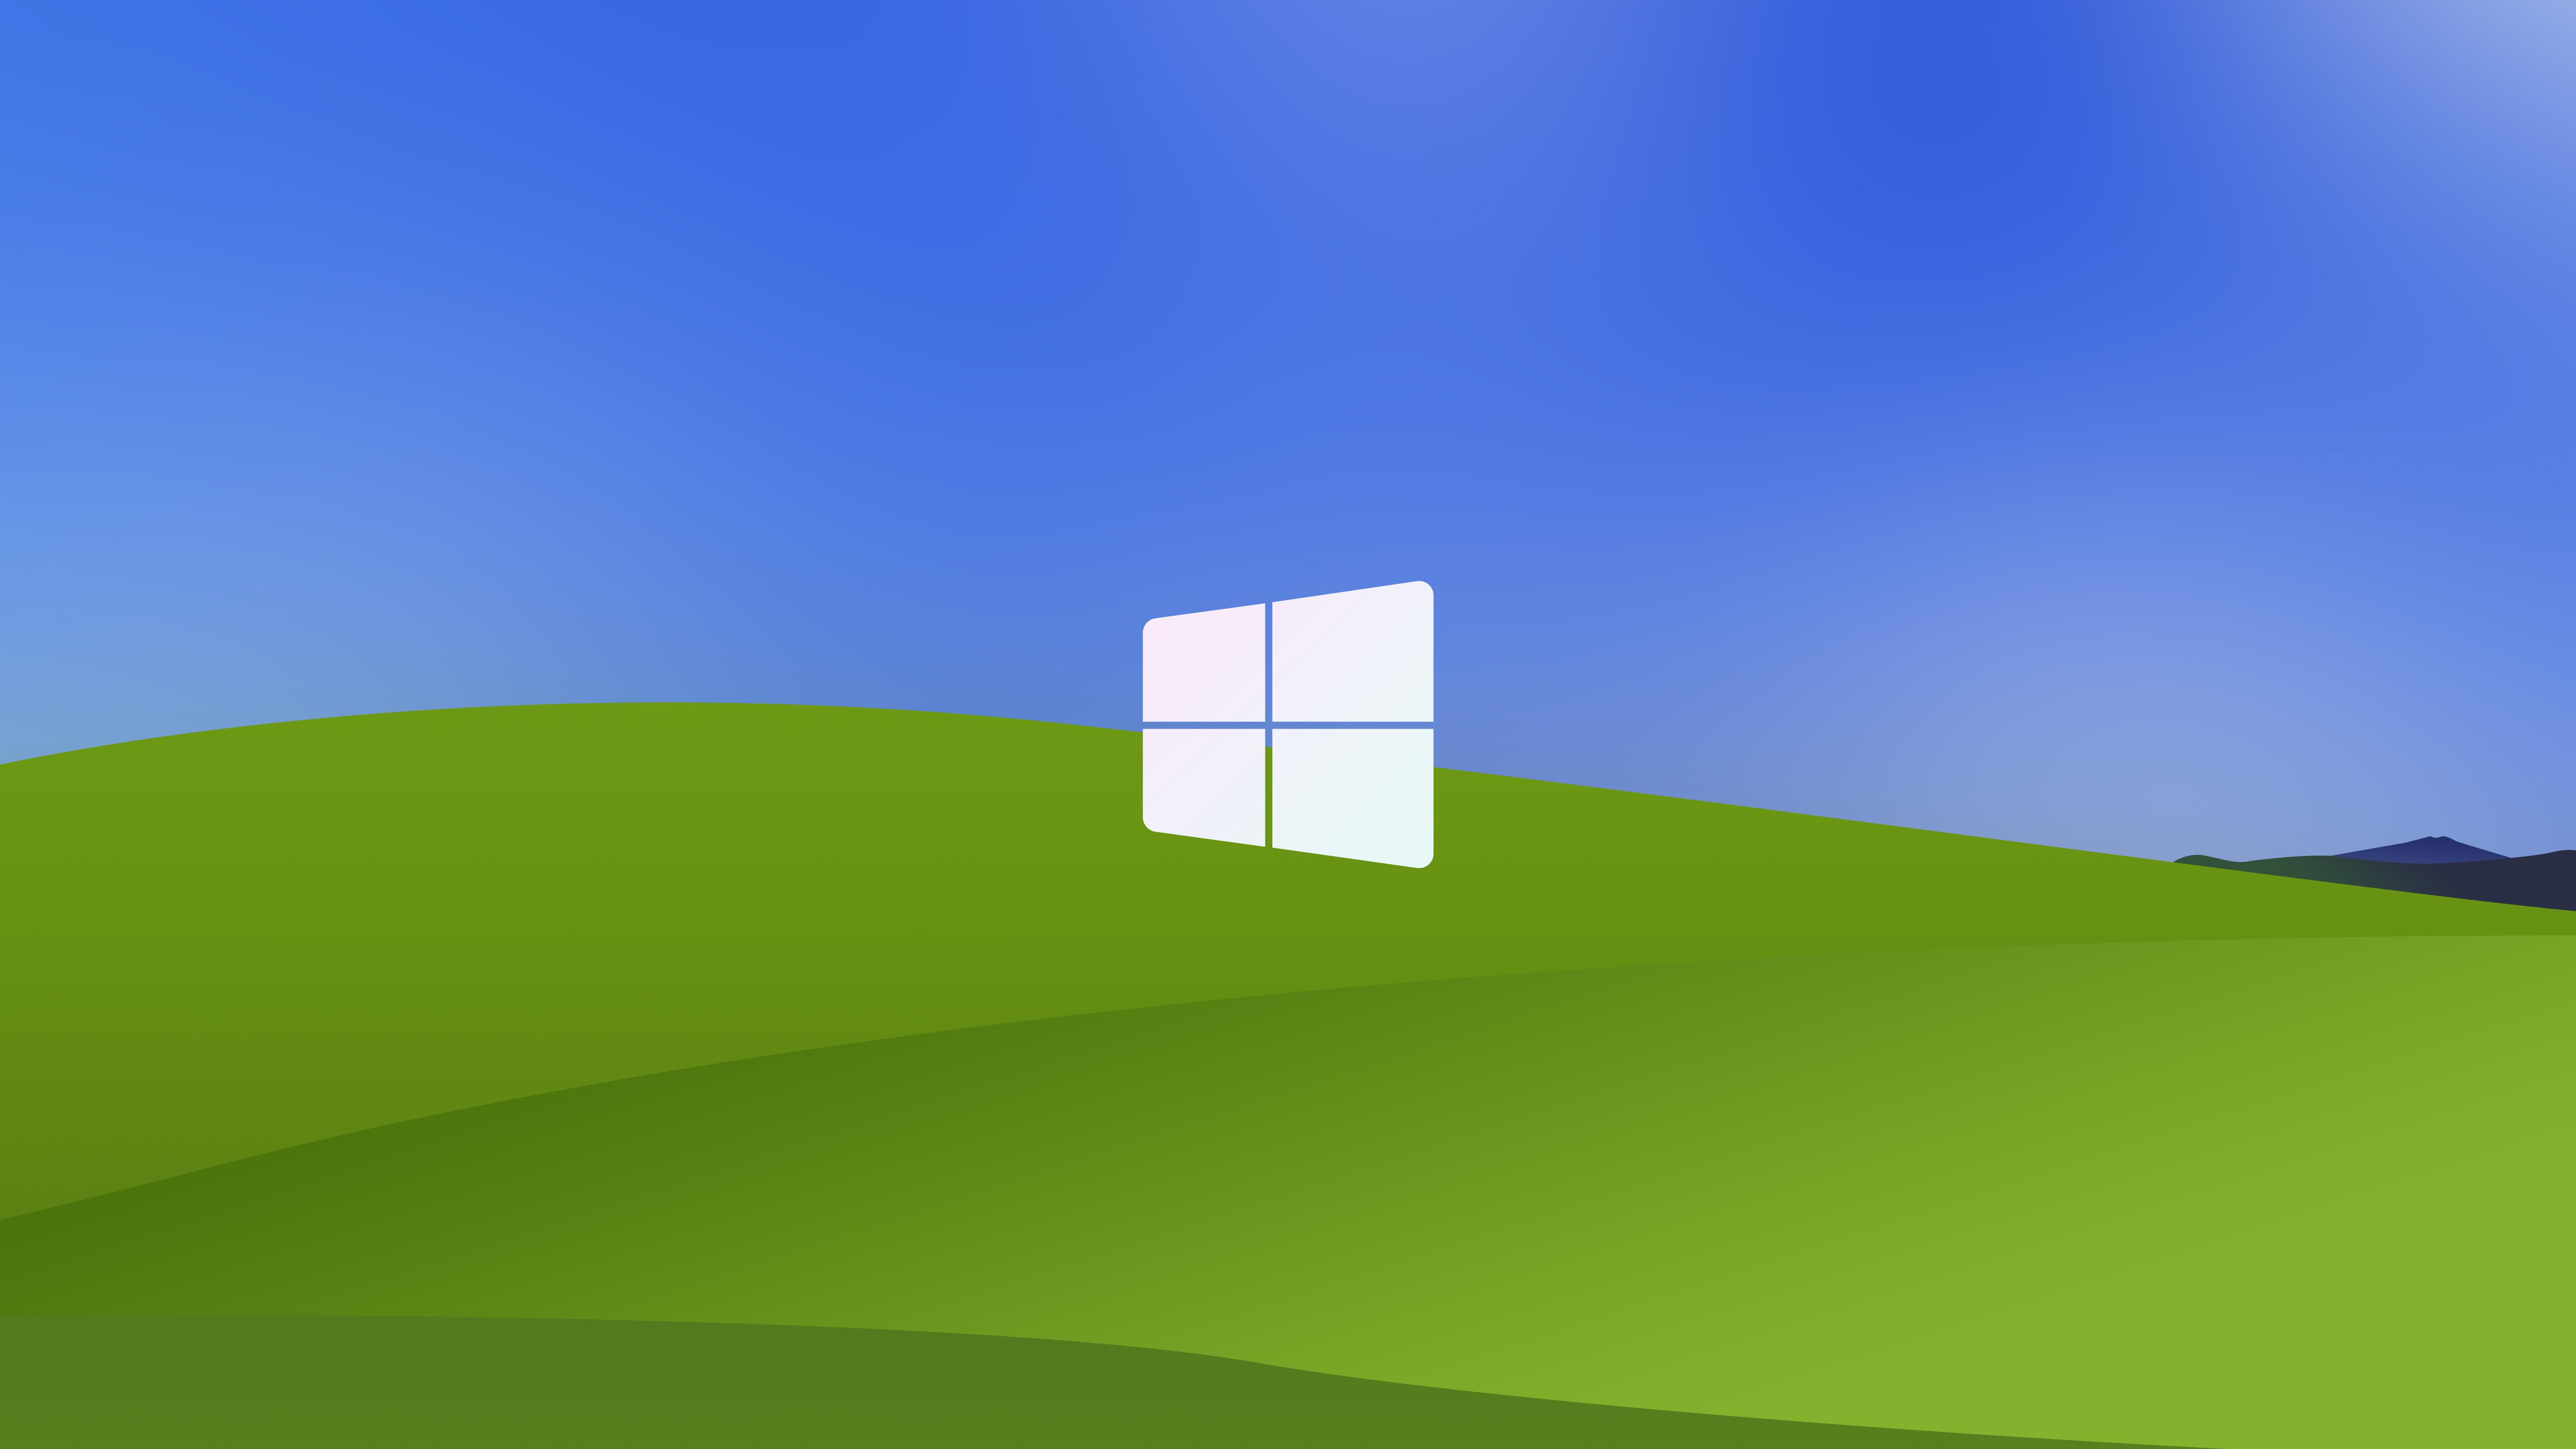 Biểu tượng Windows XP Logo đã trở nên quen thuộc với nhiều người dùng máy tính. Để tưởng nhớ những ngày tháng tươi đẹp với Windows XP, hãy tự tay tải xuống những hình ảnh về logo này và đưa nó trang trí lên màn hình máy tính nhé!